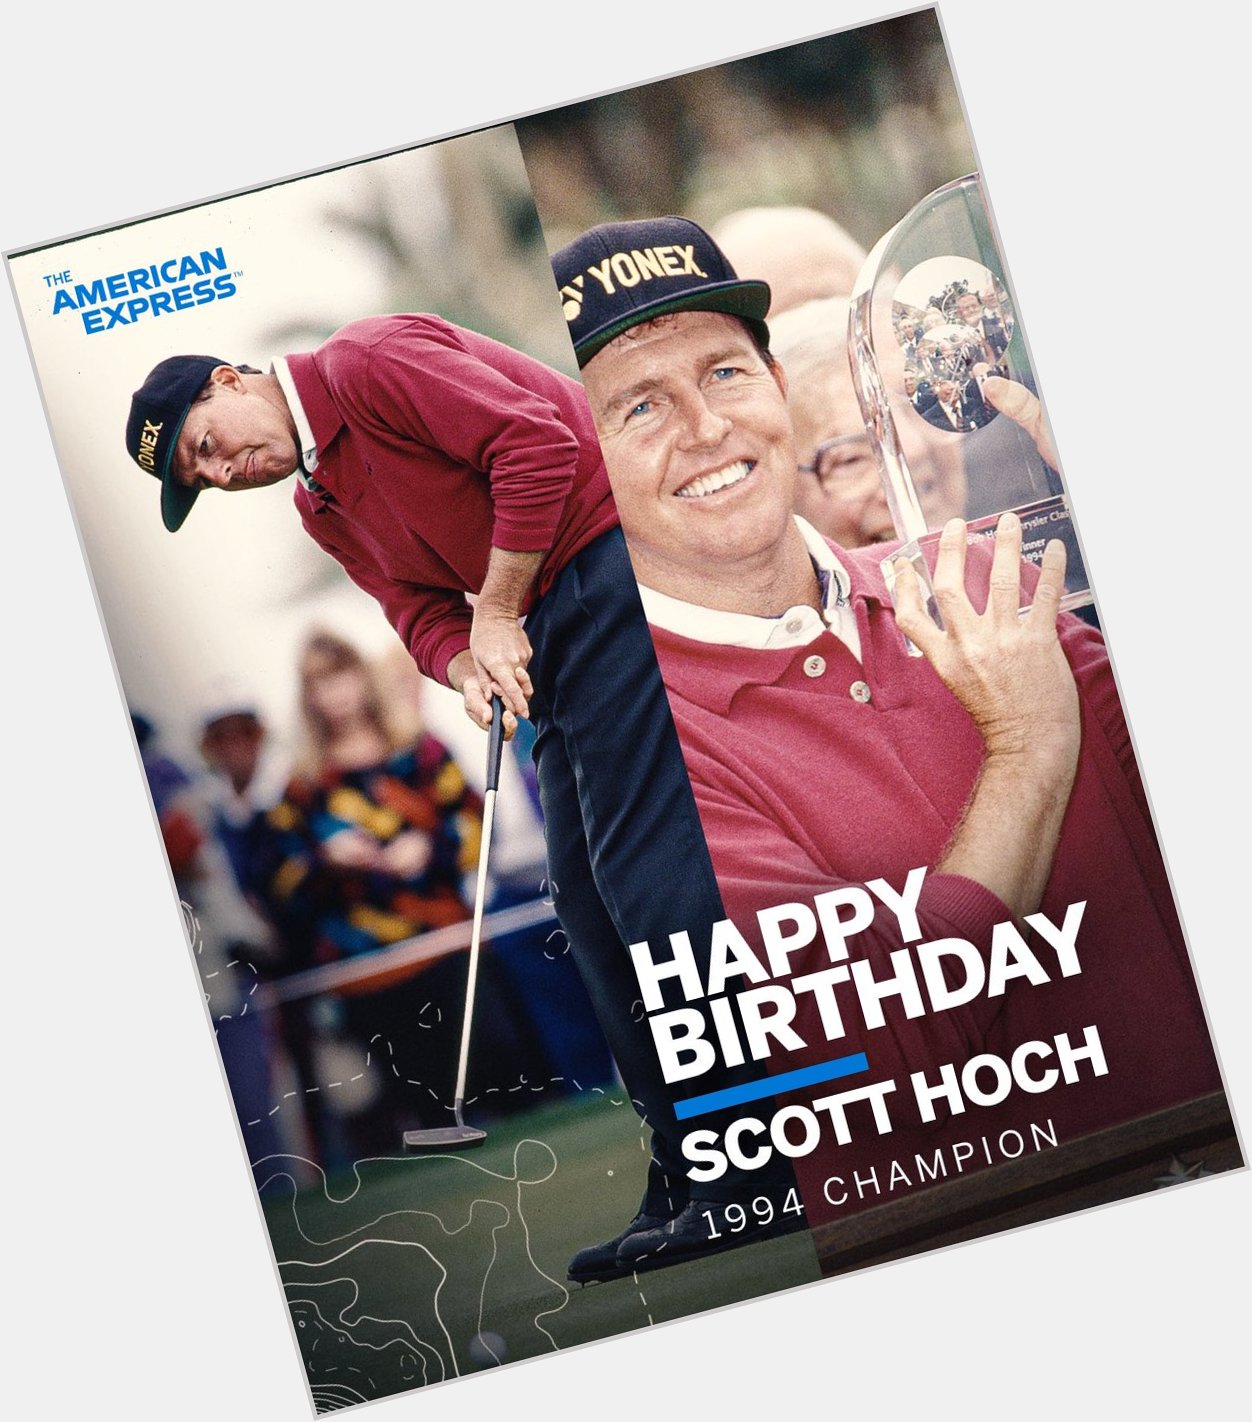 Happy birthday to our 1994 Champion, Scott Hoch 